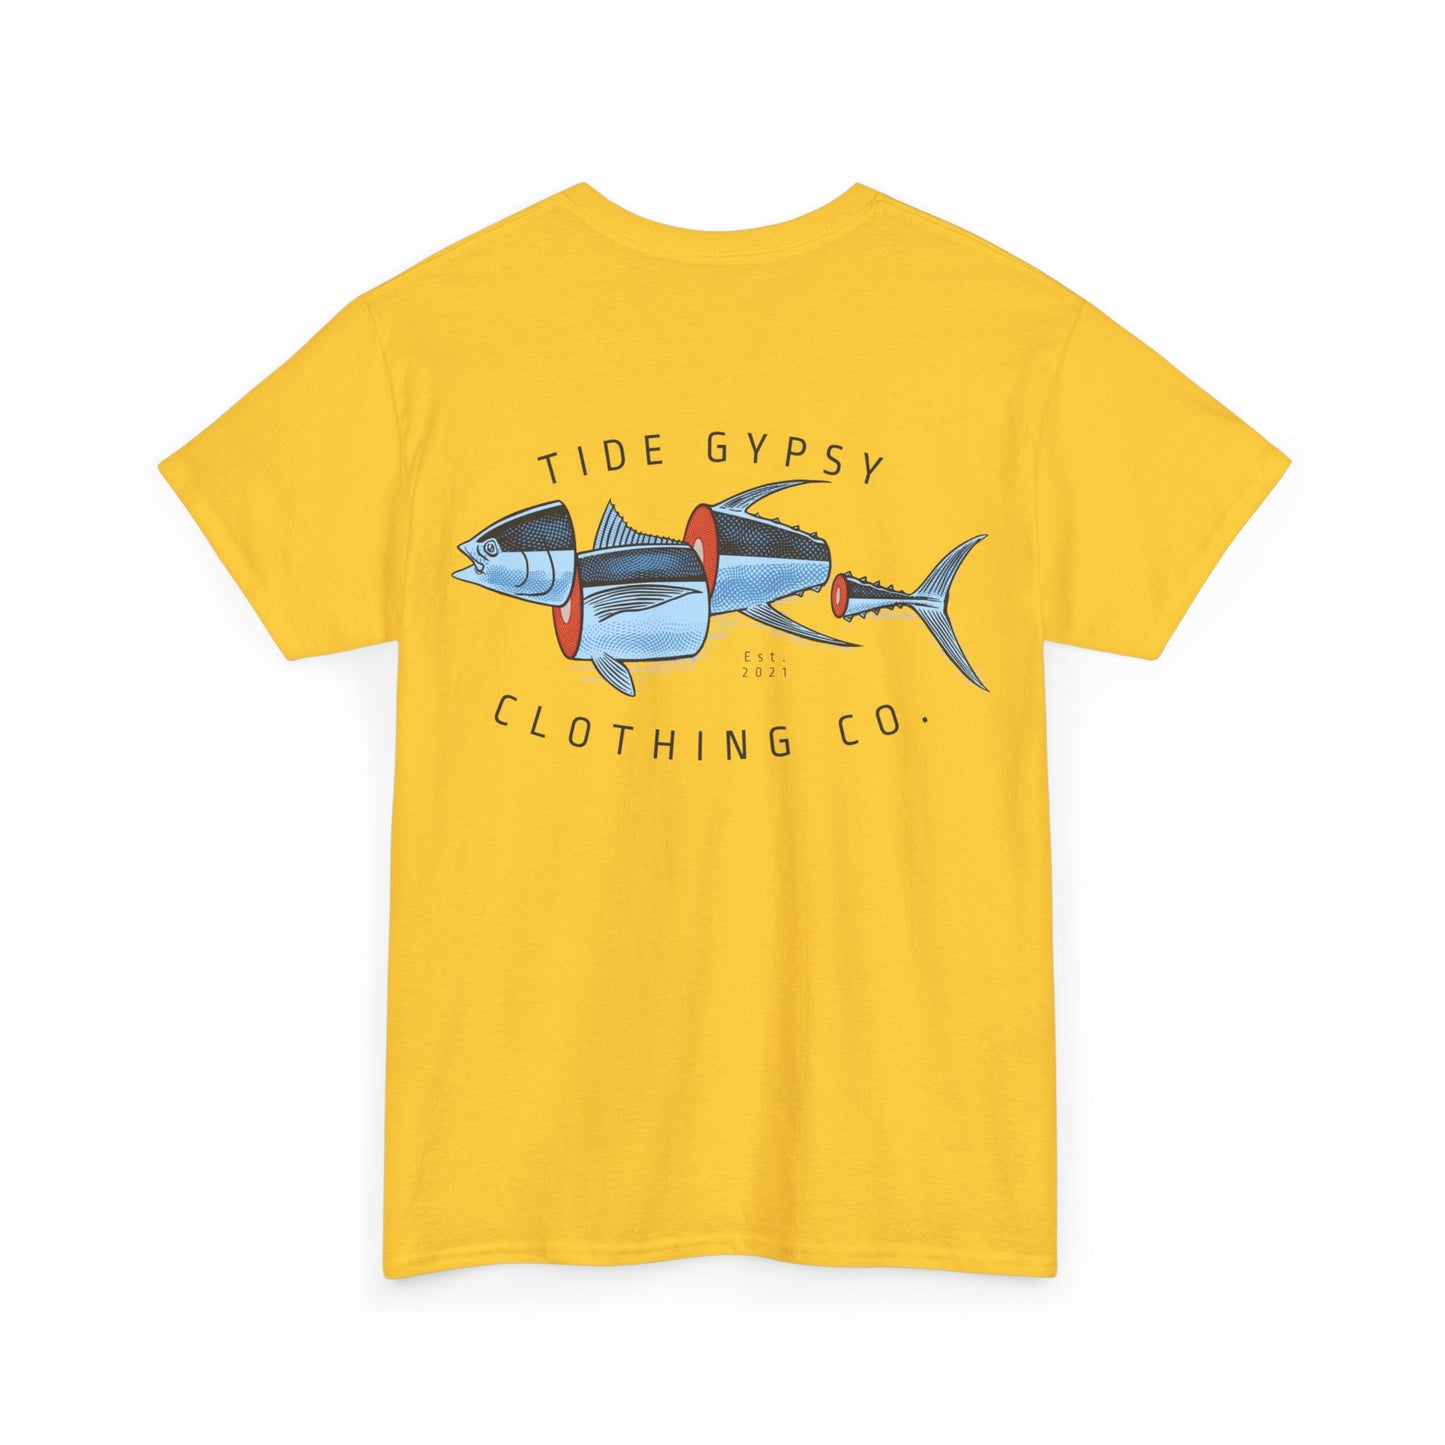 Tuna Sushi T-shirt